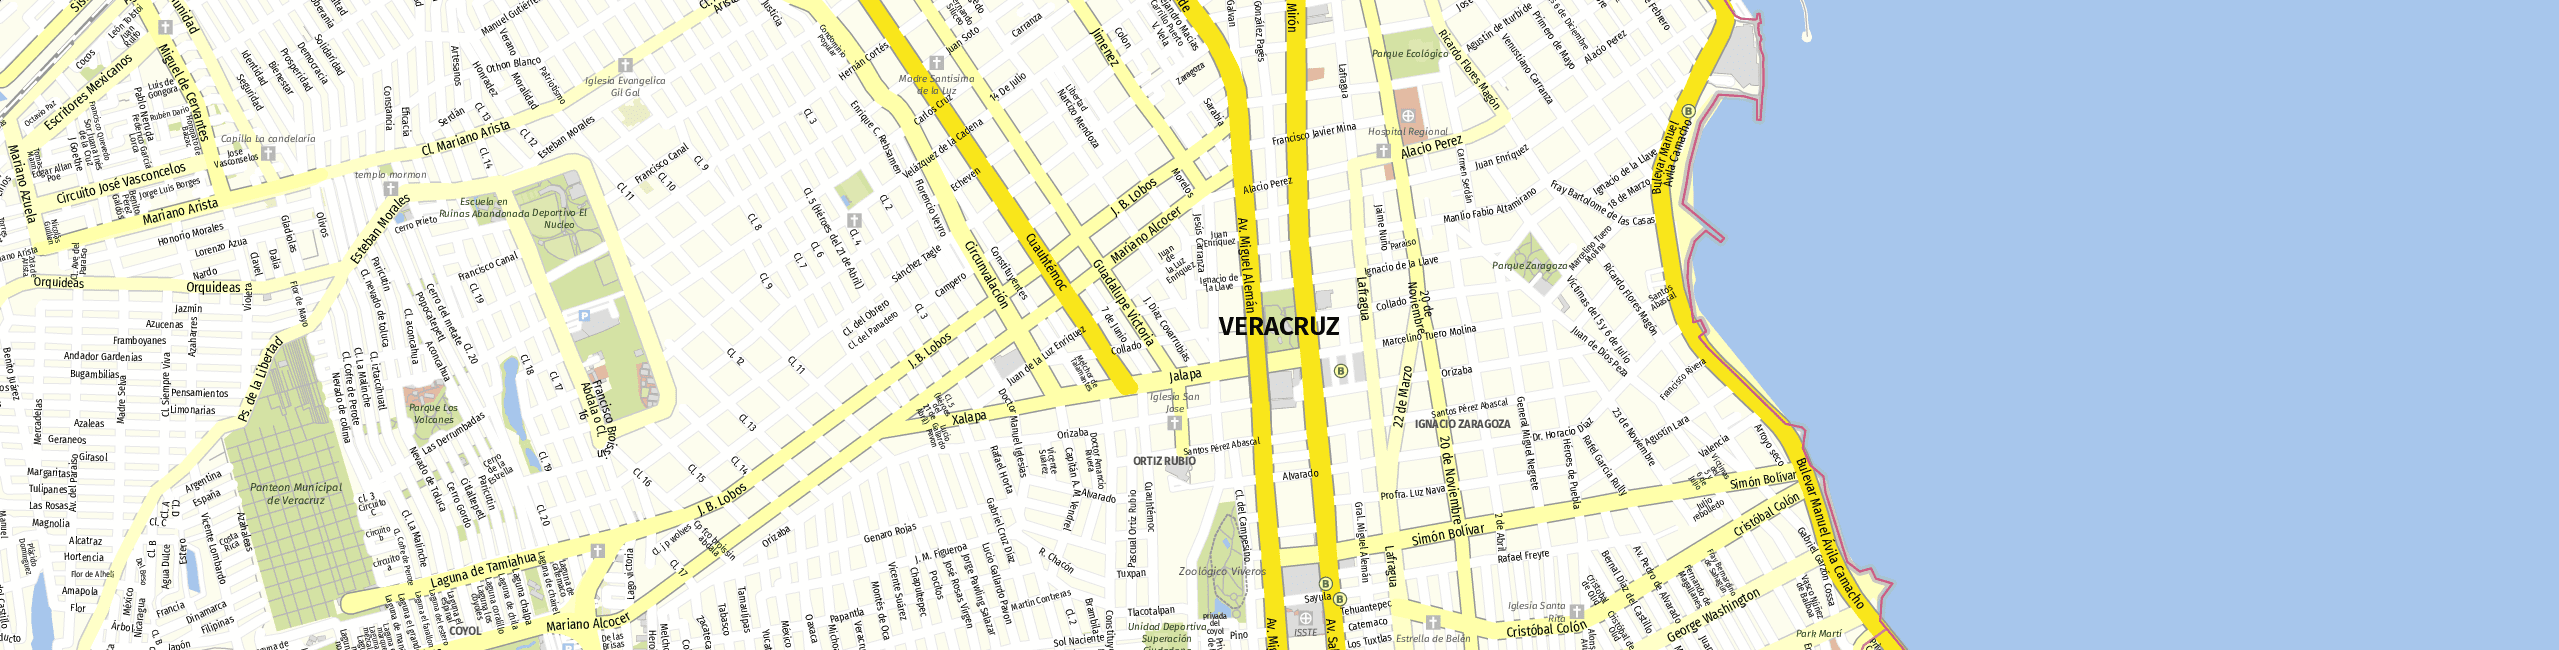 Stadtplan Veracruz zum Downloaden.